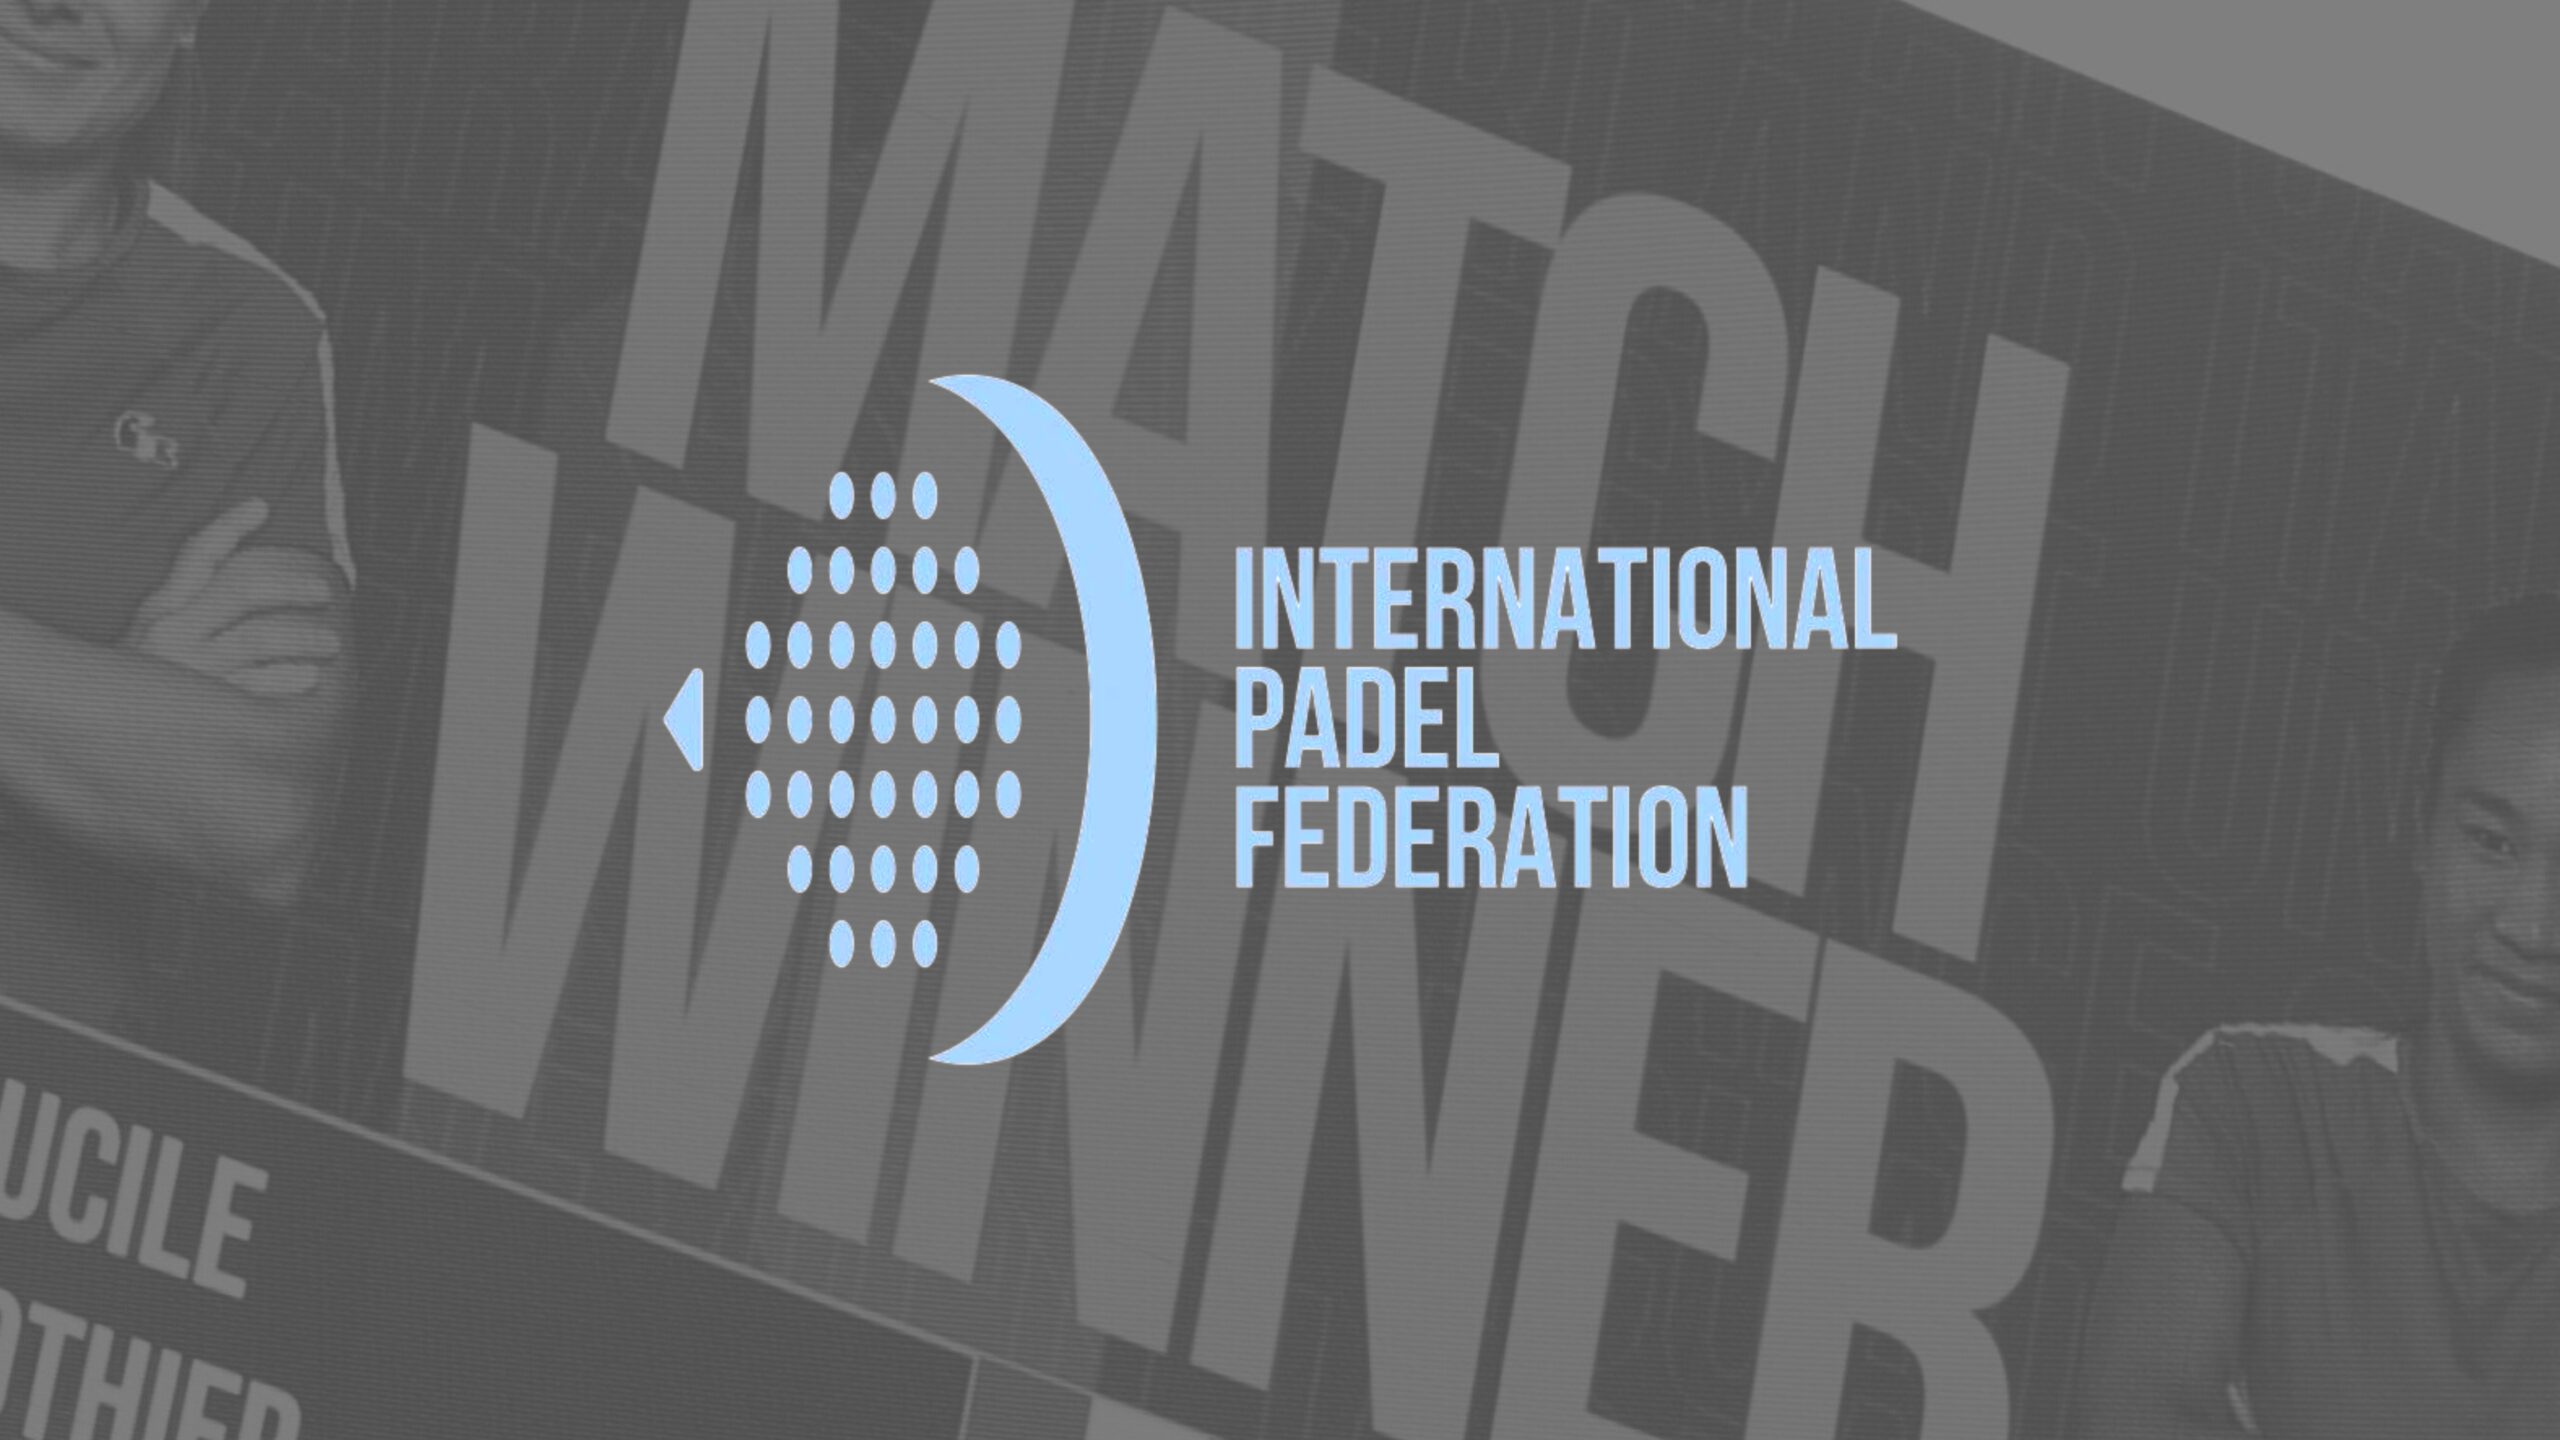 “L'intent de presa de possessió de la padel per la ITF rebutjada per la comunitat internacional del tennis"